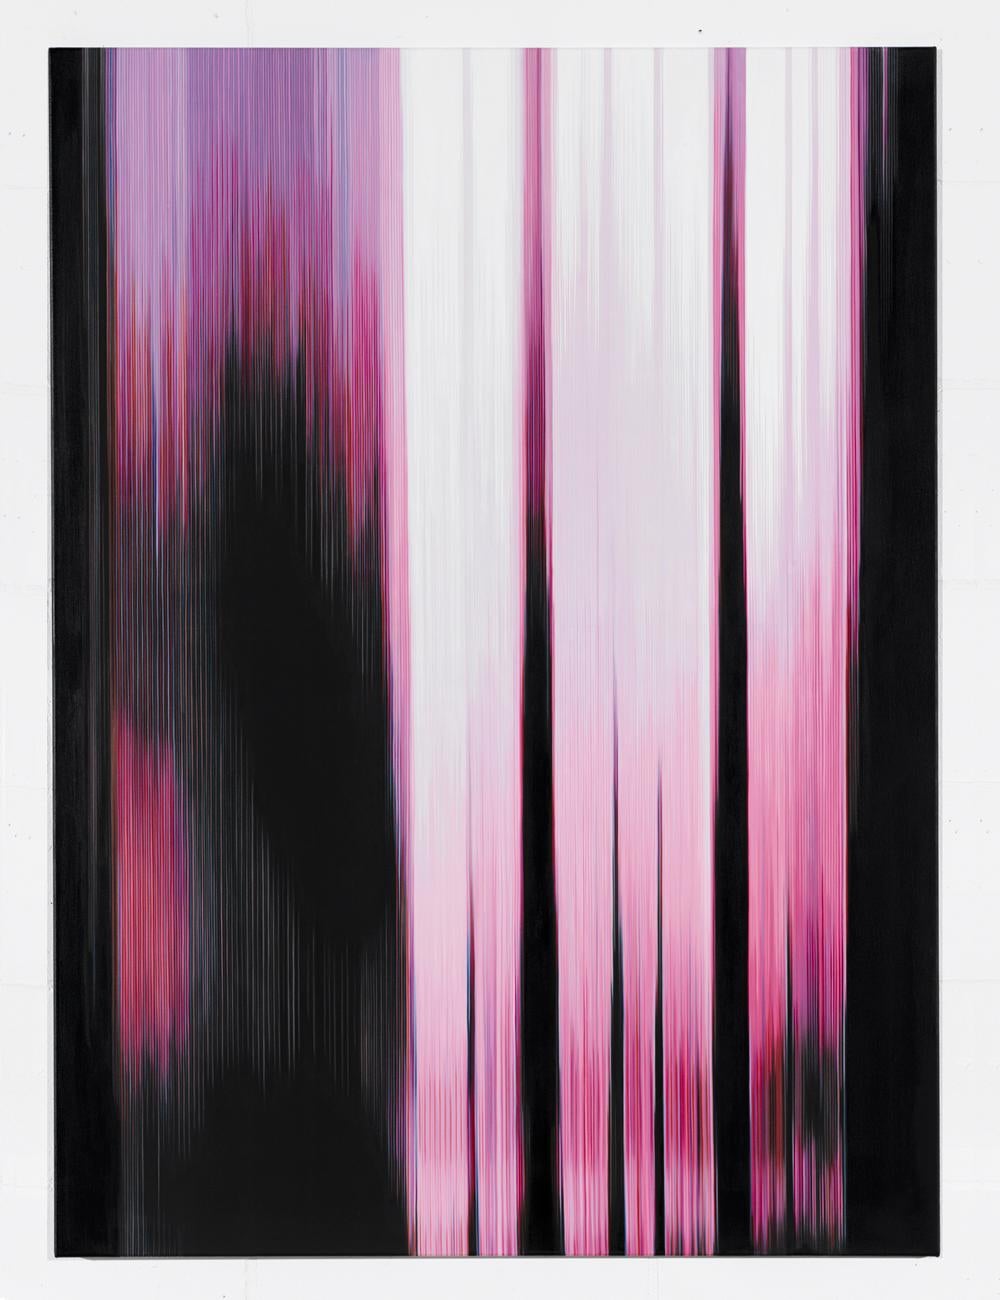 Pink Painting (Abbildung Nr. 1) ist ein einzigartiges Gemälde der deutschen zeitgenössischen Künstlerin Doris Marten in den Maßen 150 cm x 110 cm, Öl auf Baumwolle.

Das Kunstwerk ist signiert, wird ungerahmt verkauft und wird mit einem